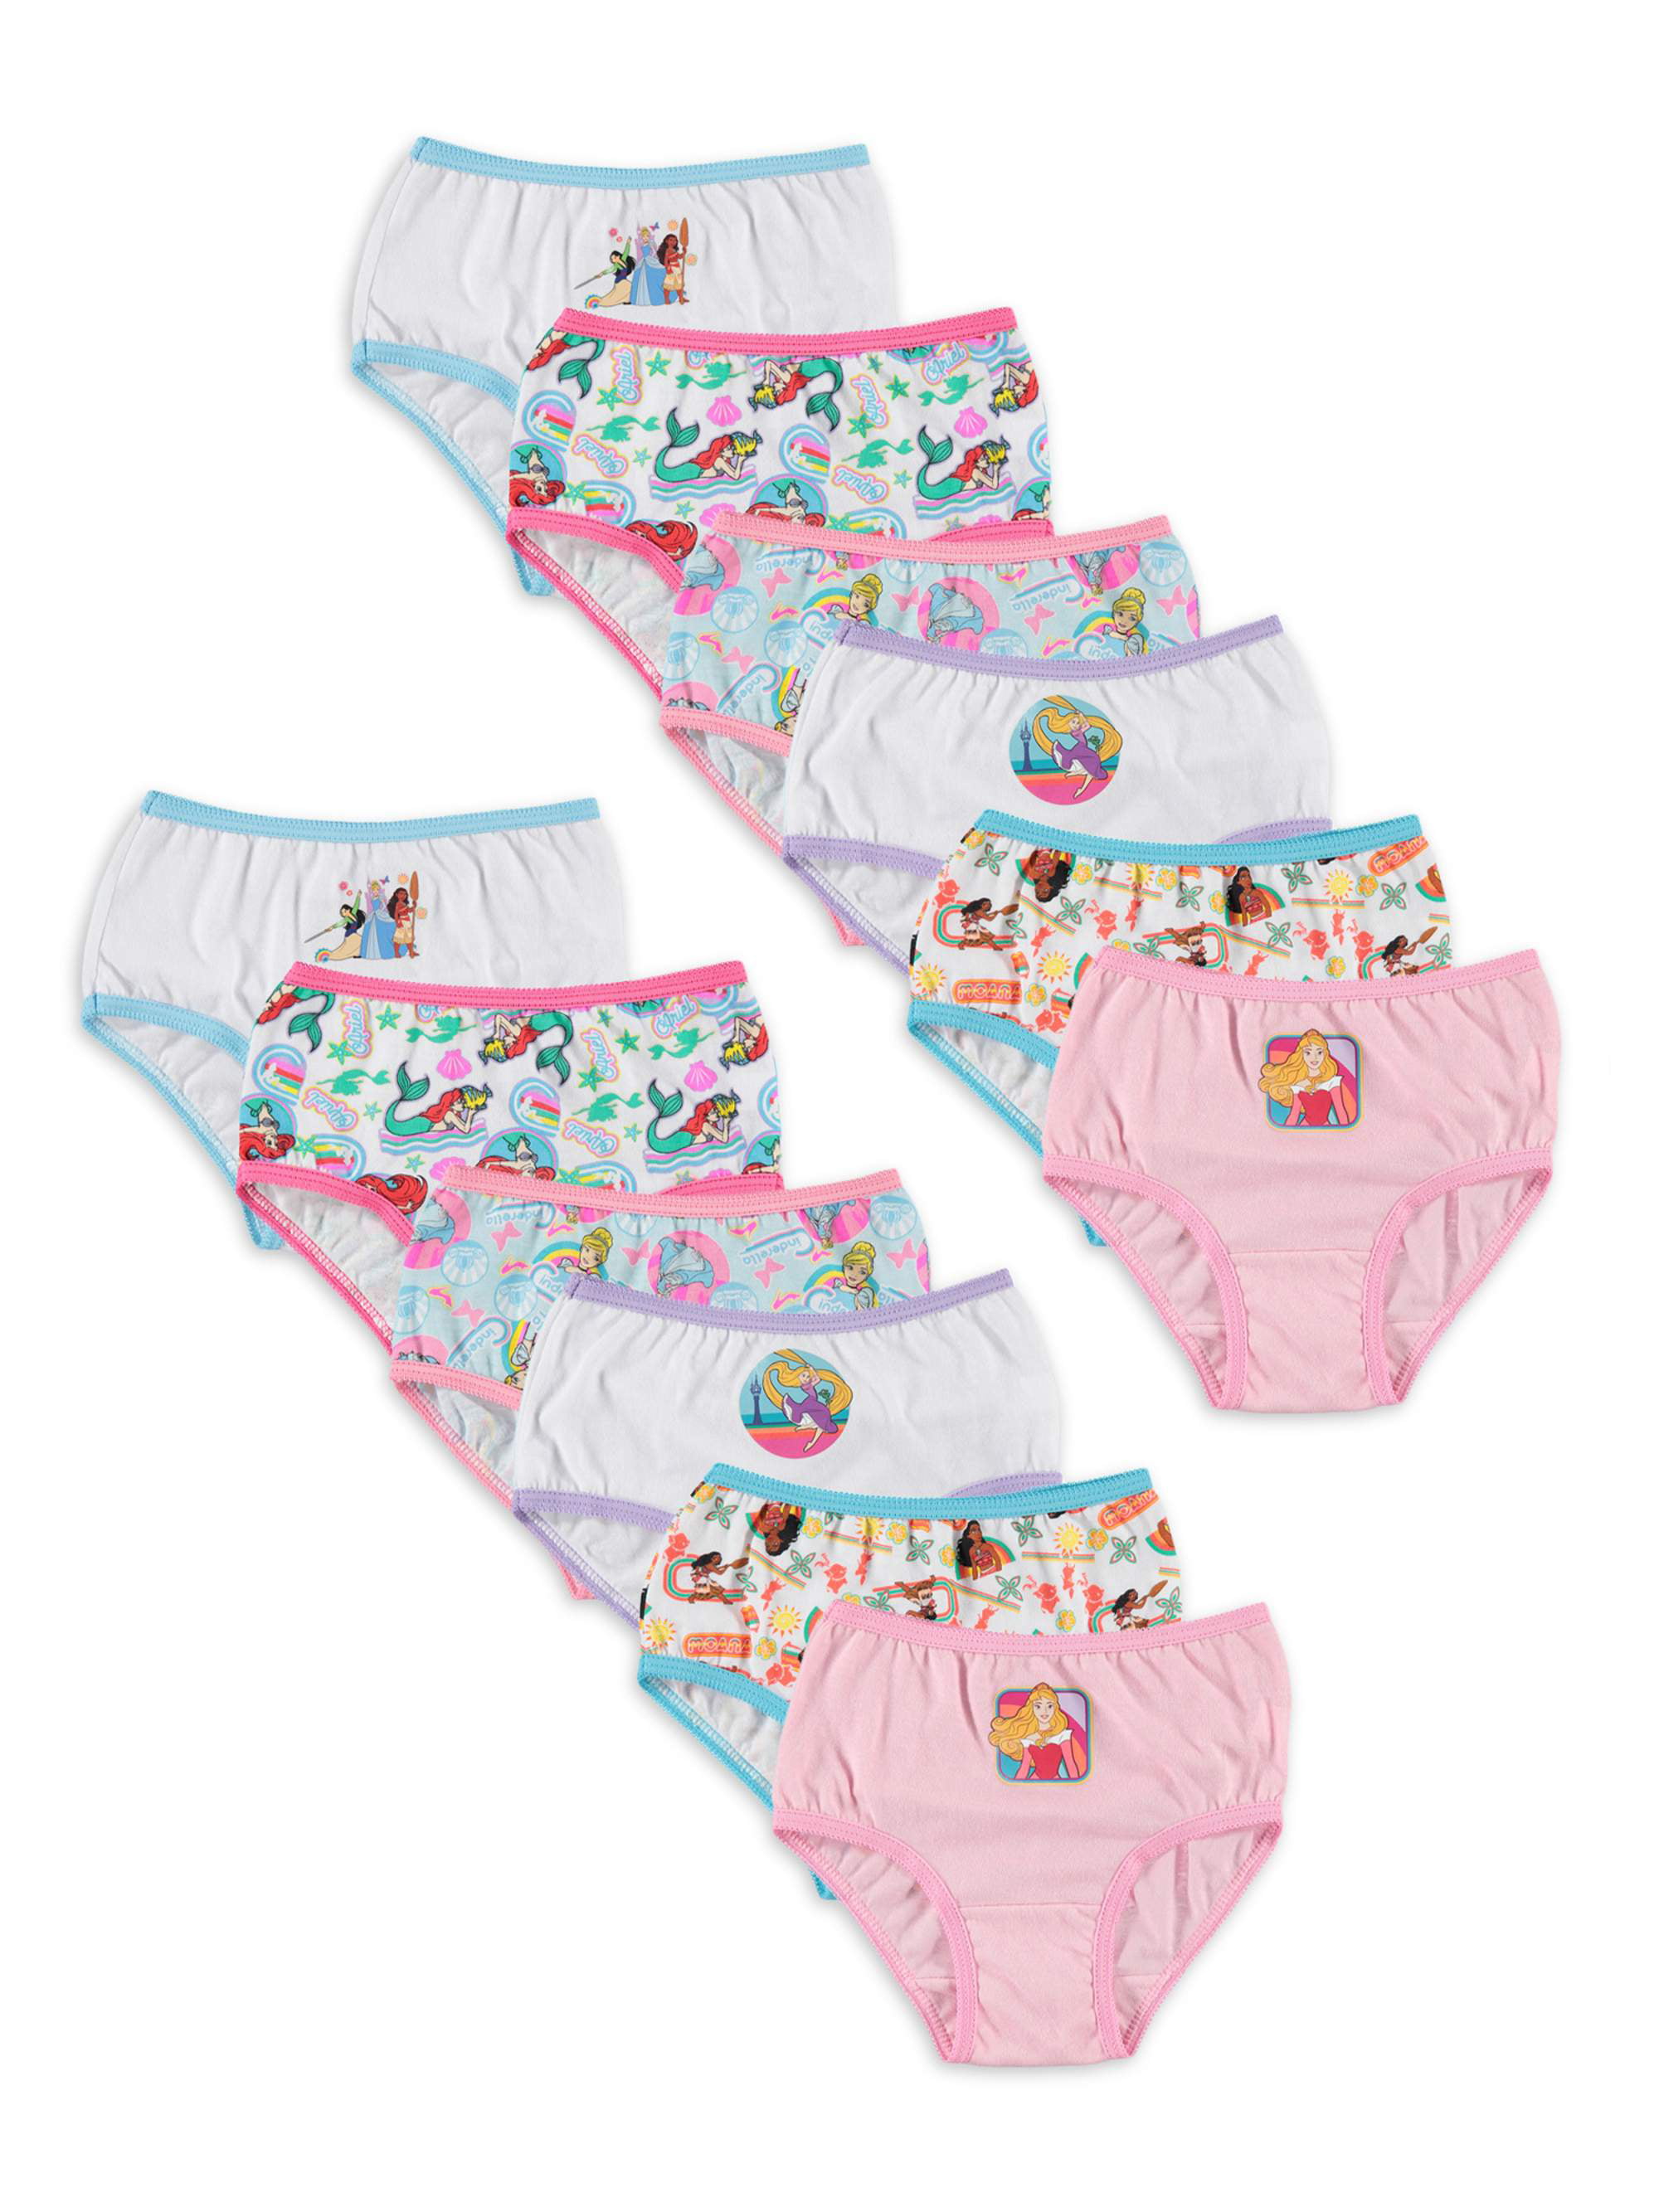 Disney Princess Underwear Underpants Girls 3 Pair Panty Pack 4 Sleeping  Beauty